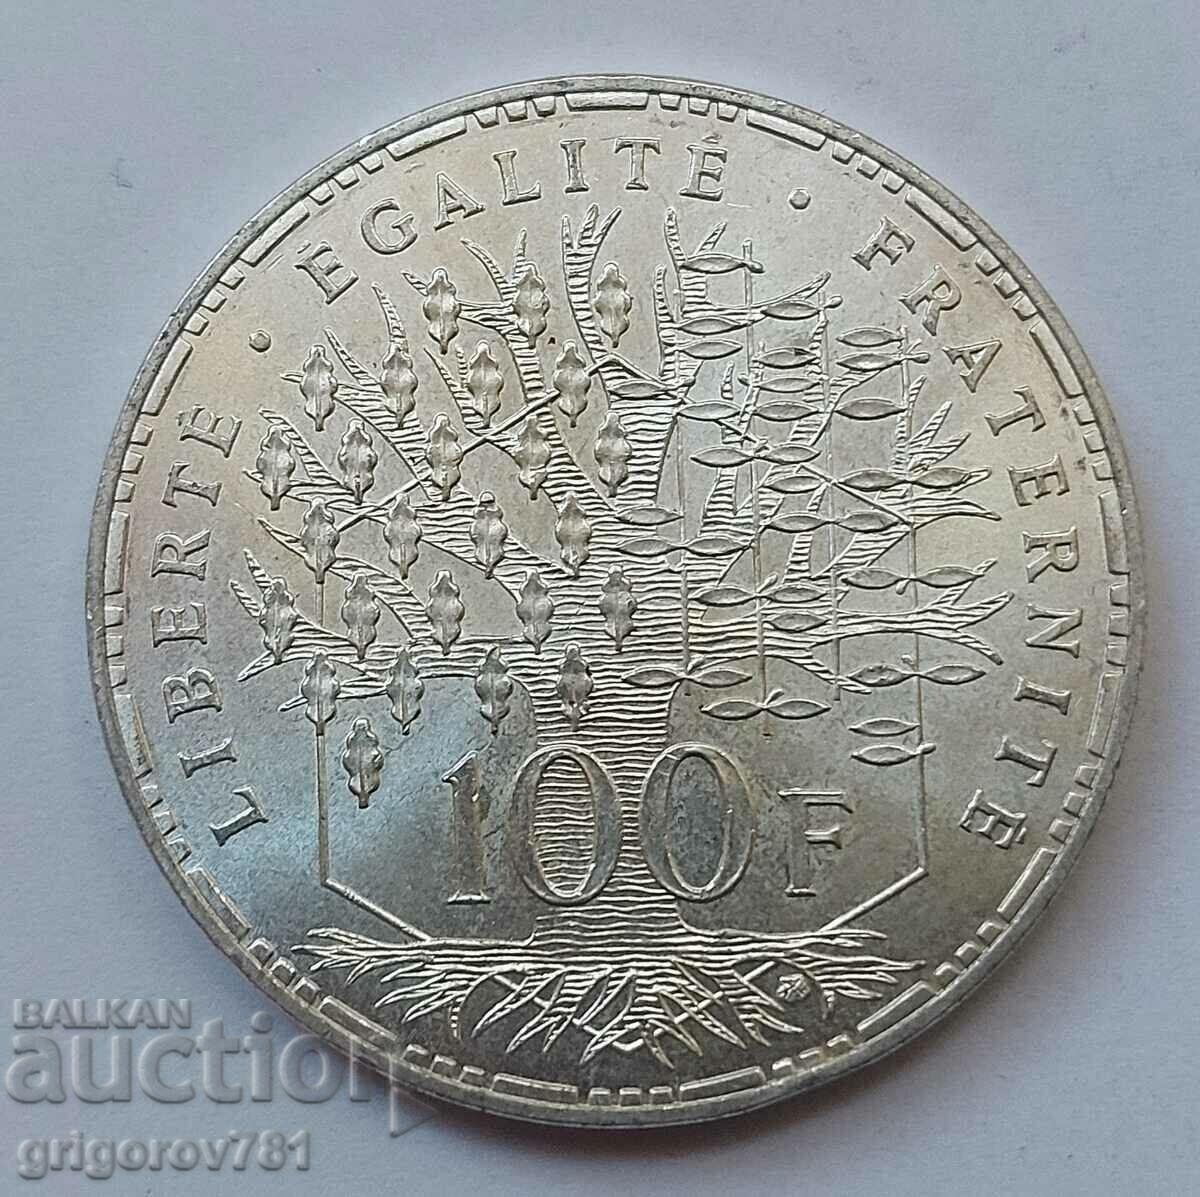 100 Franci Argint Franta 1982 - Moneda de argint #3